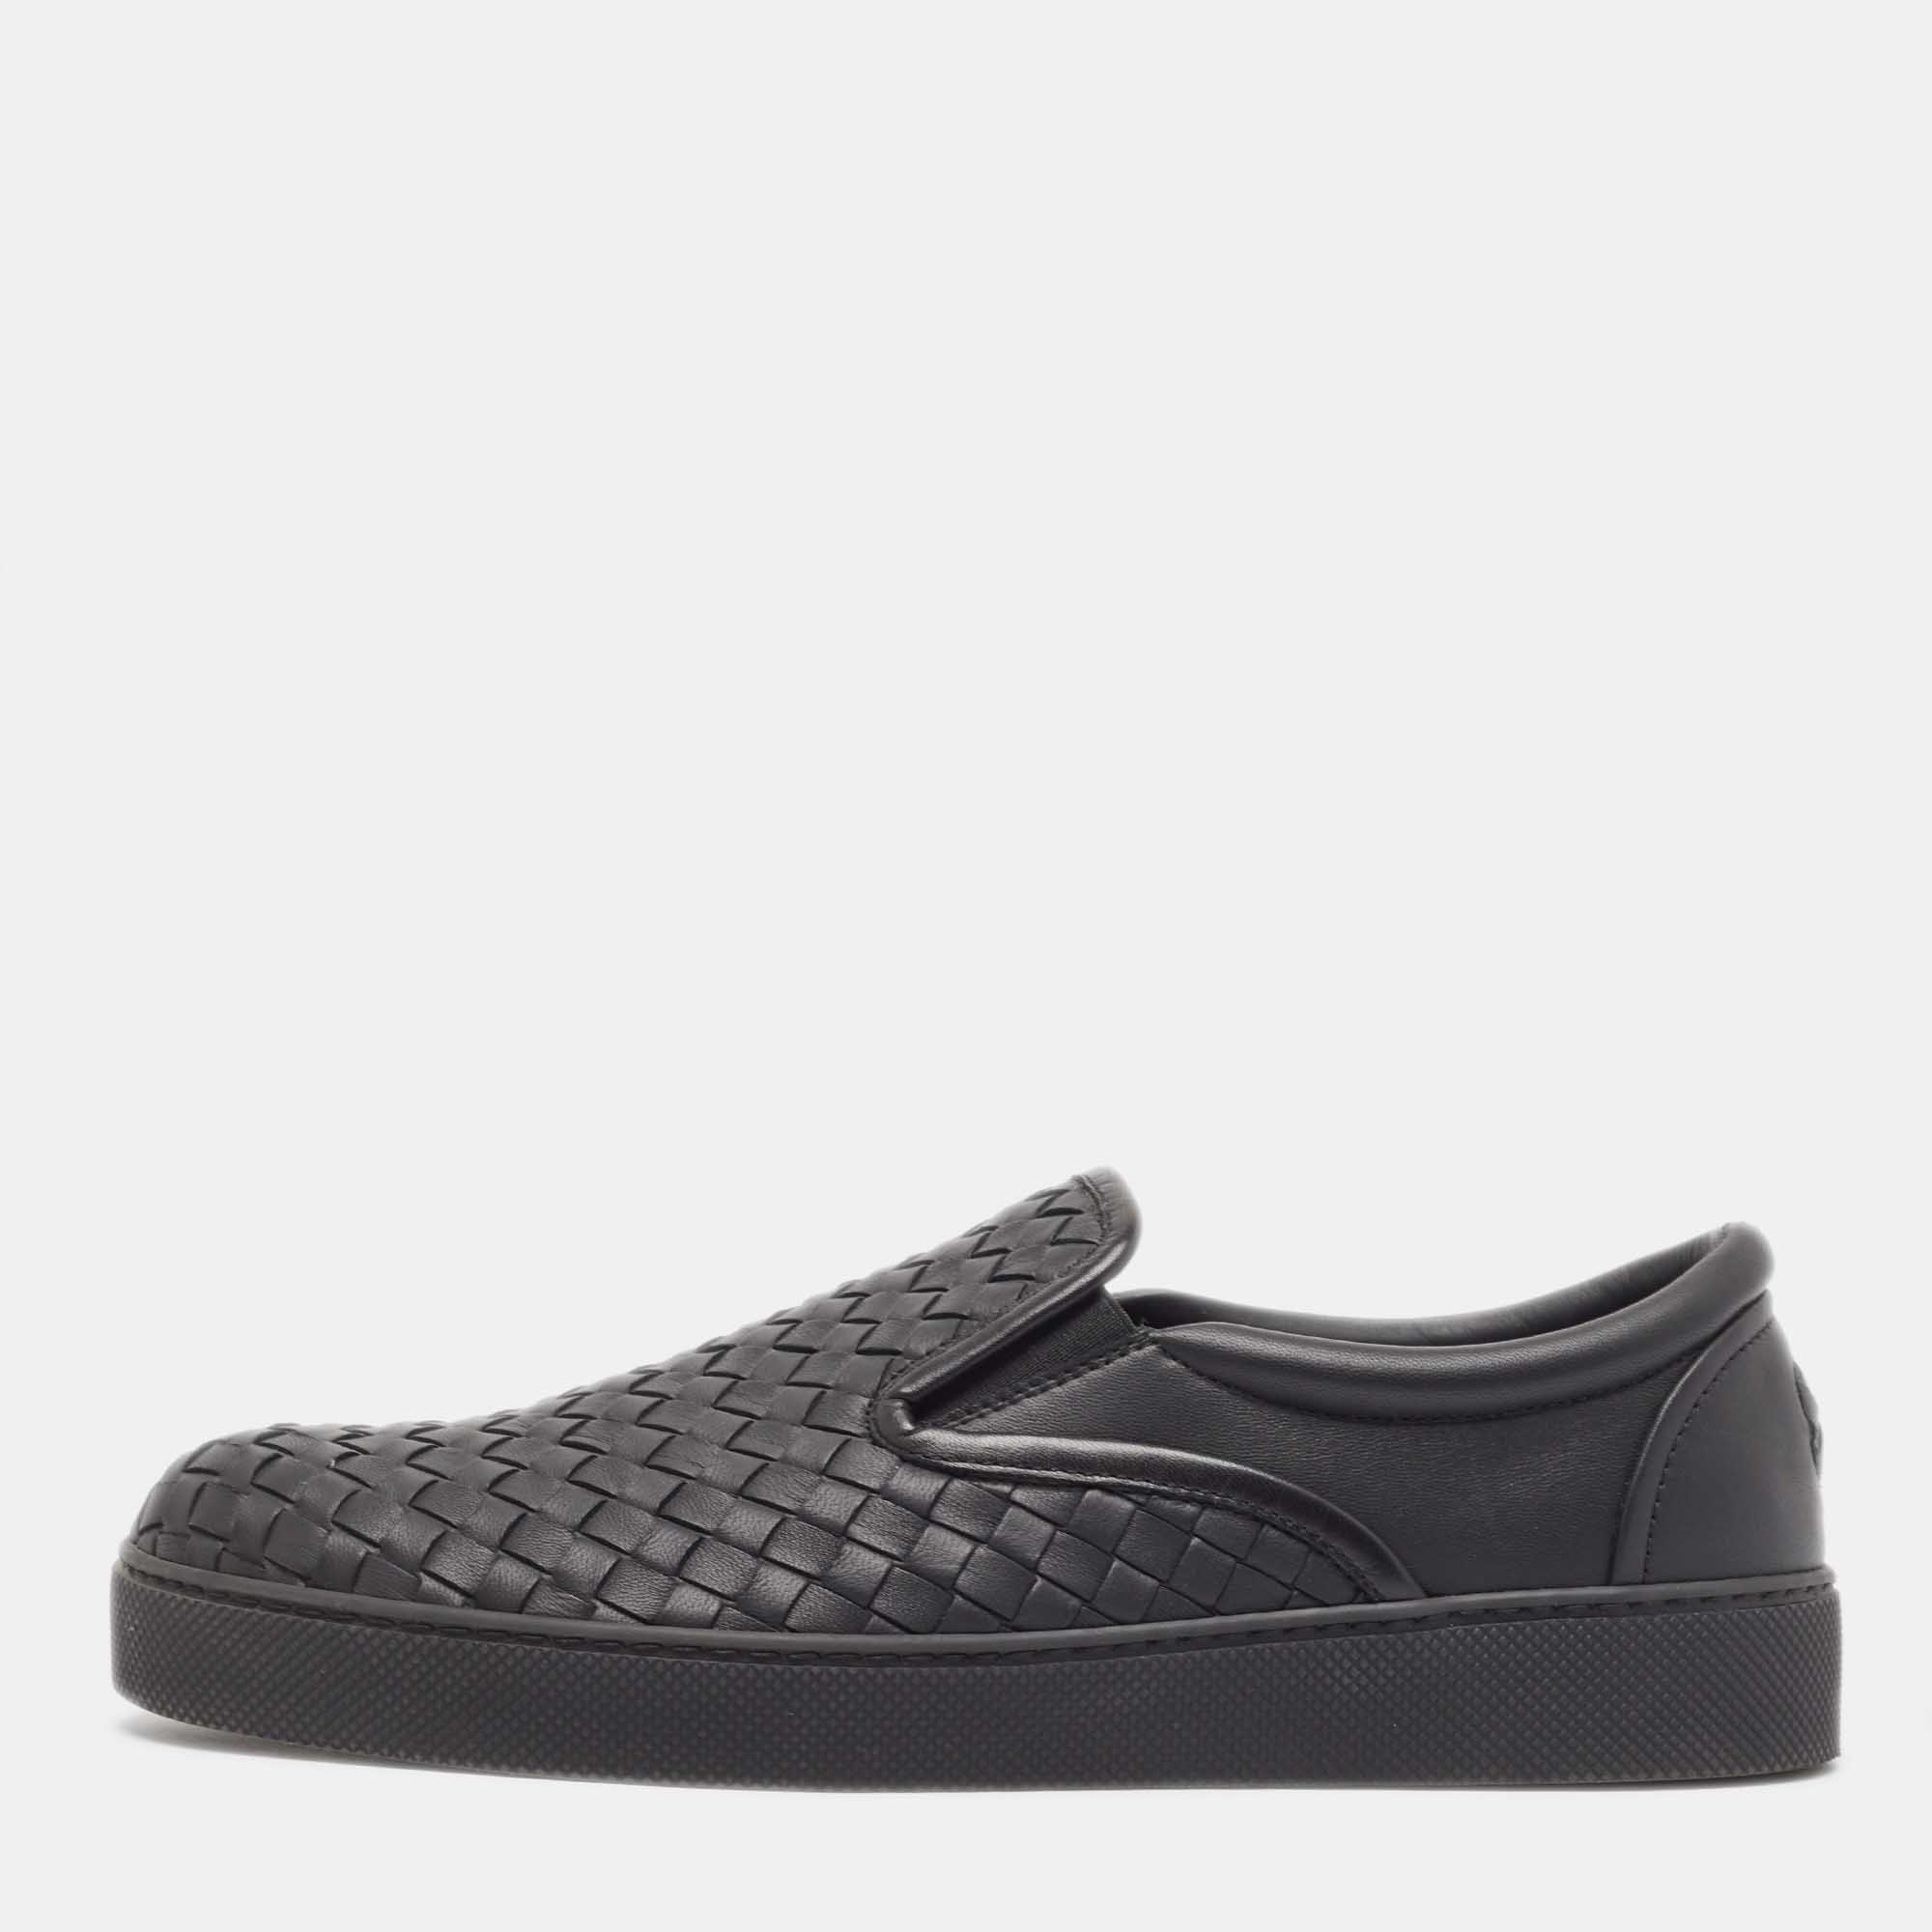 Bottega veneta black intrecciato leather slip on sneakers size 40